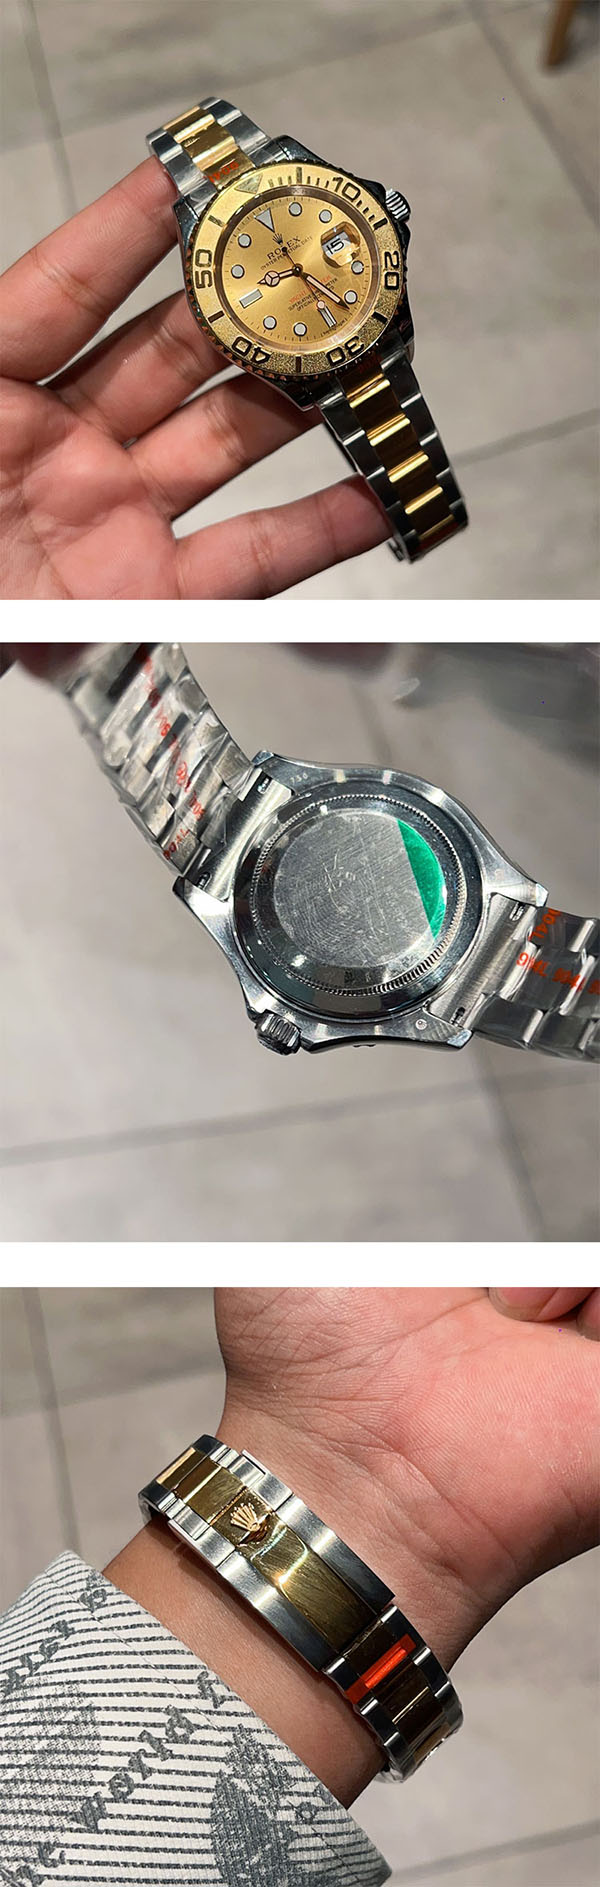 【1月目玉商品】ヨットマスターコピー時計  16623 40mm 、ファッション時計